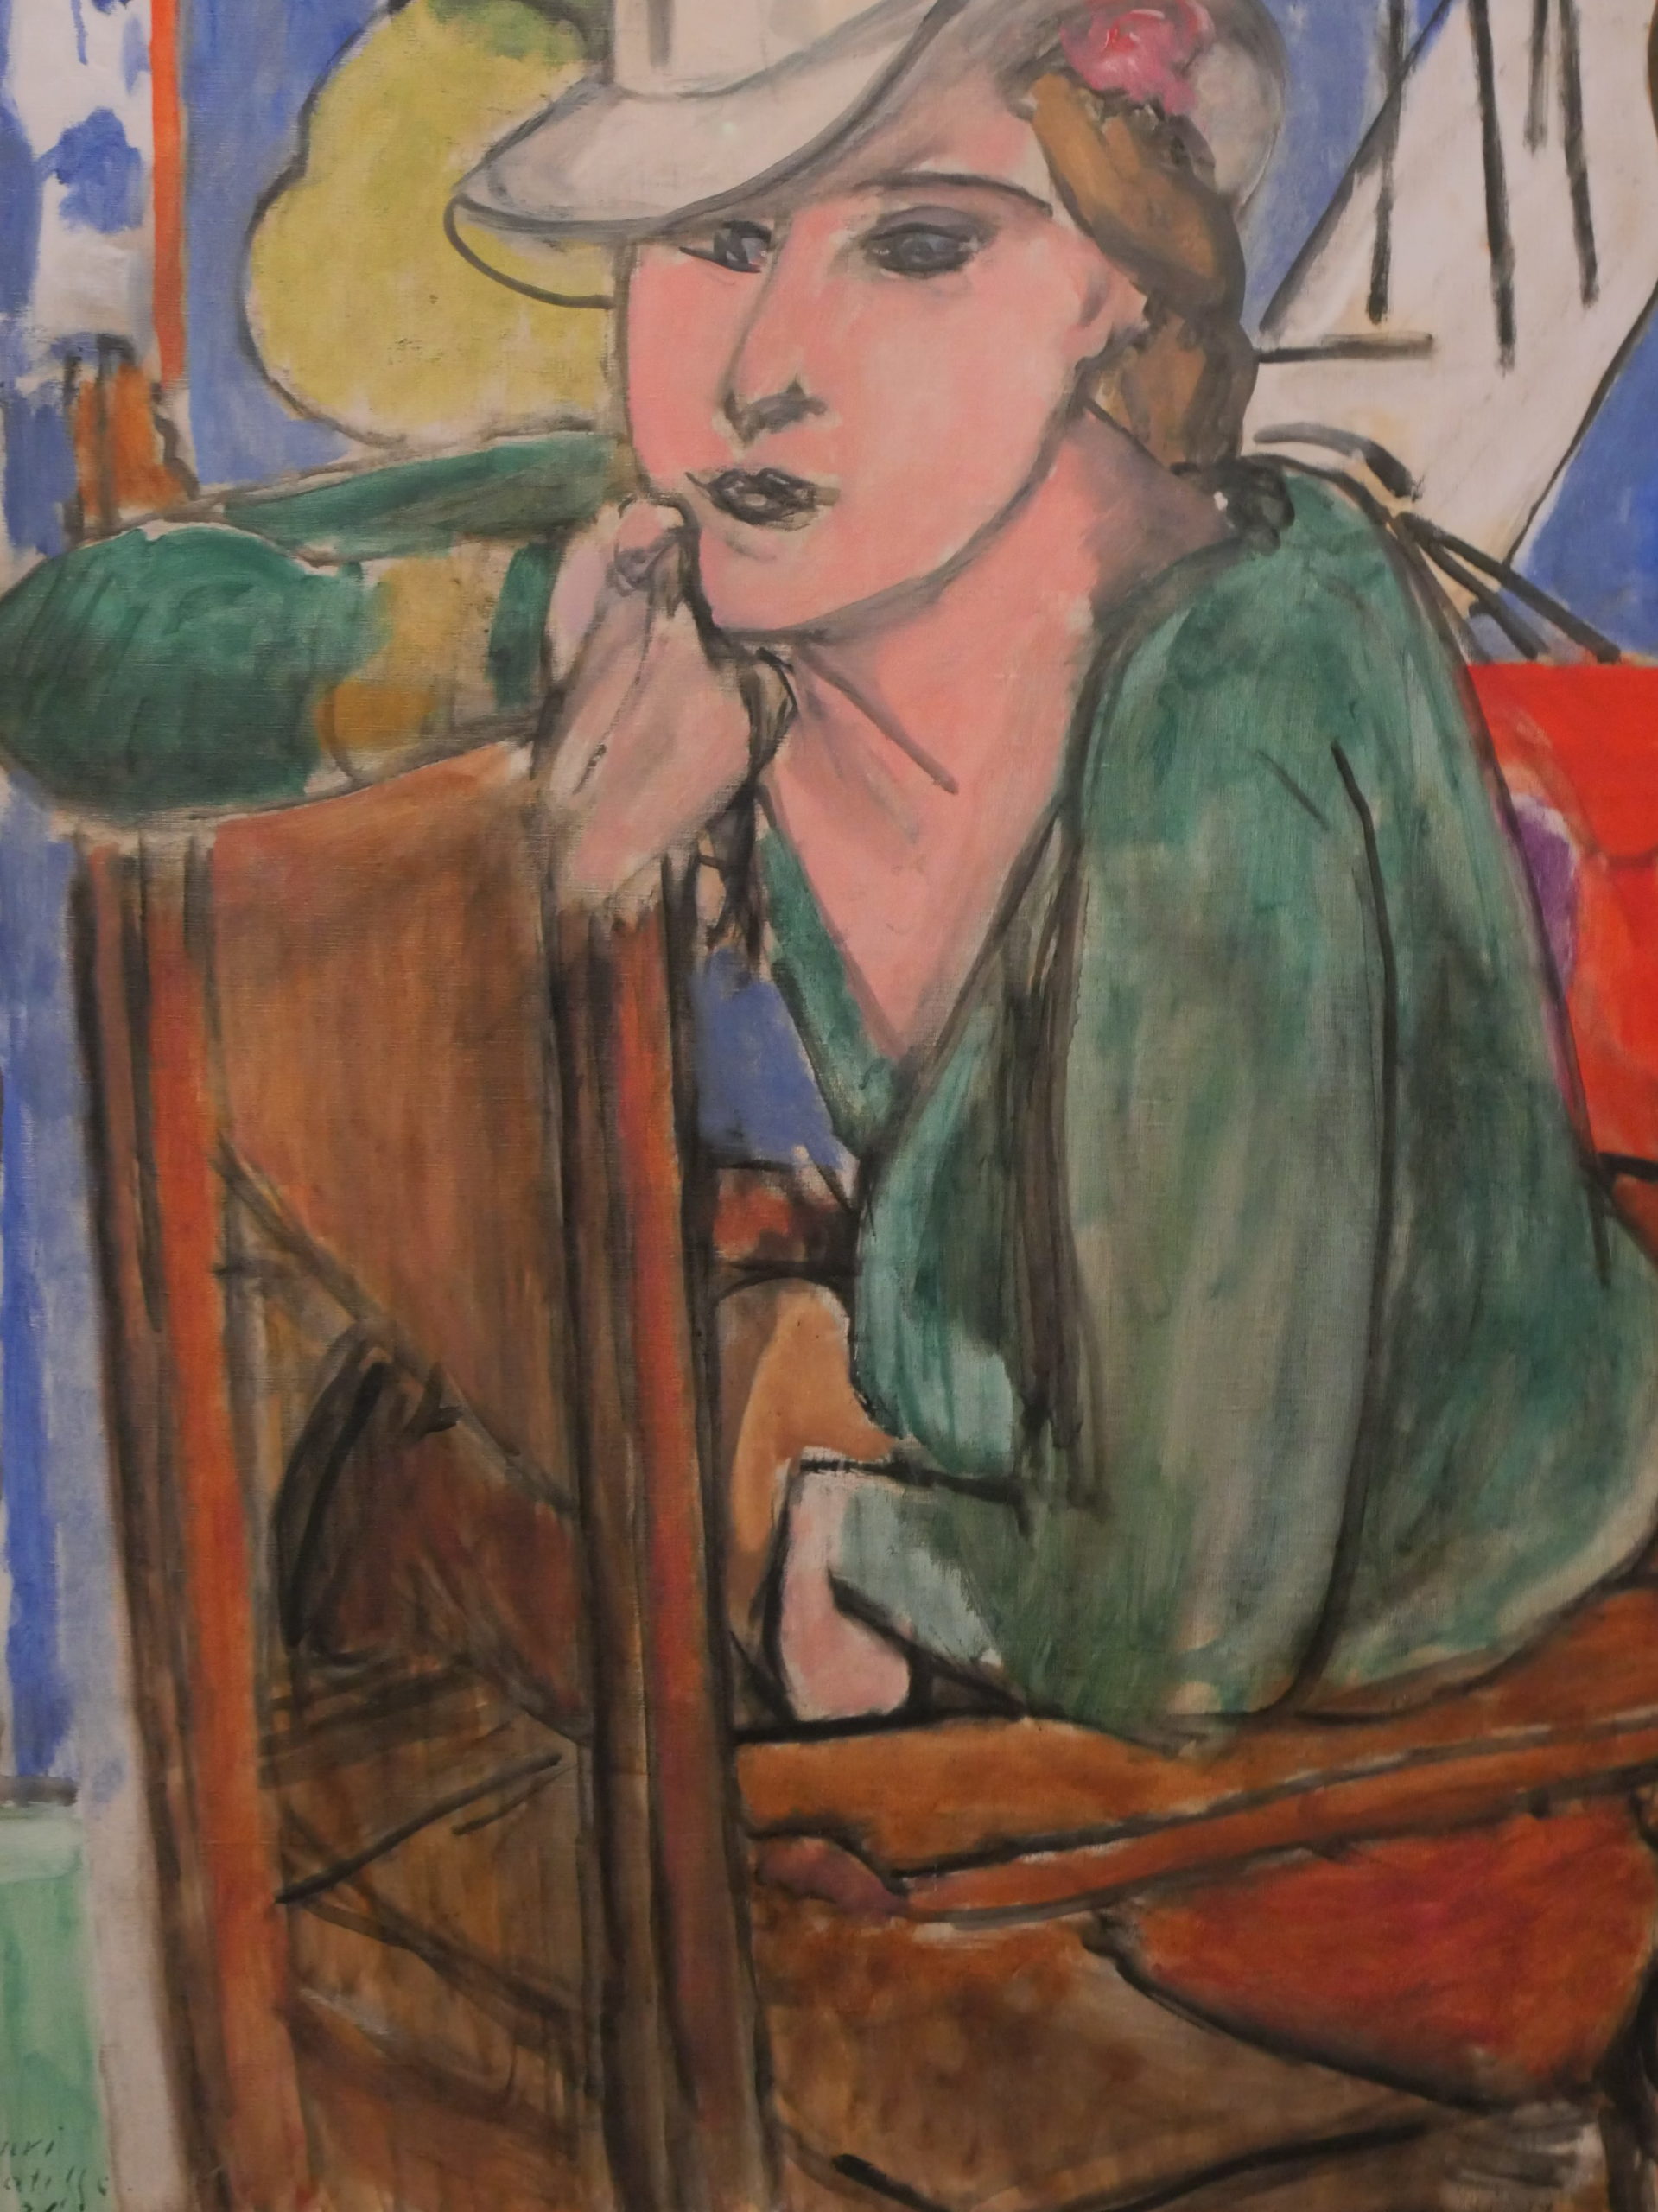 Femme accoudée à une chaise à l'envers portant une blouse verte et un chapeau